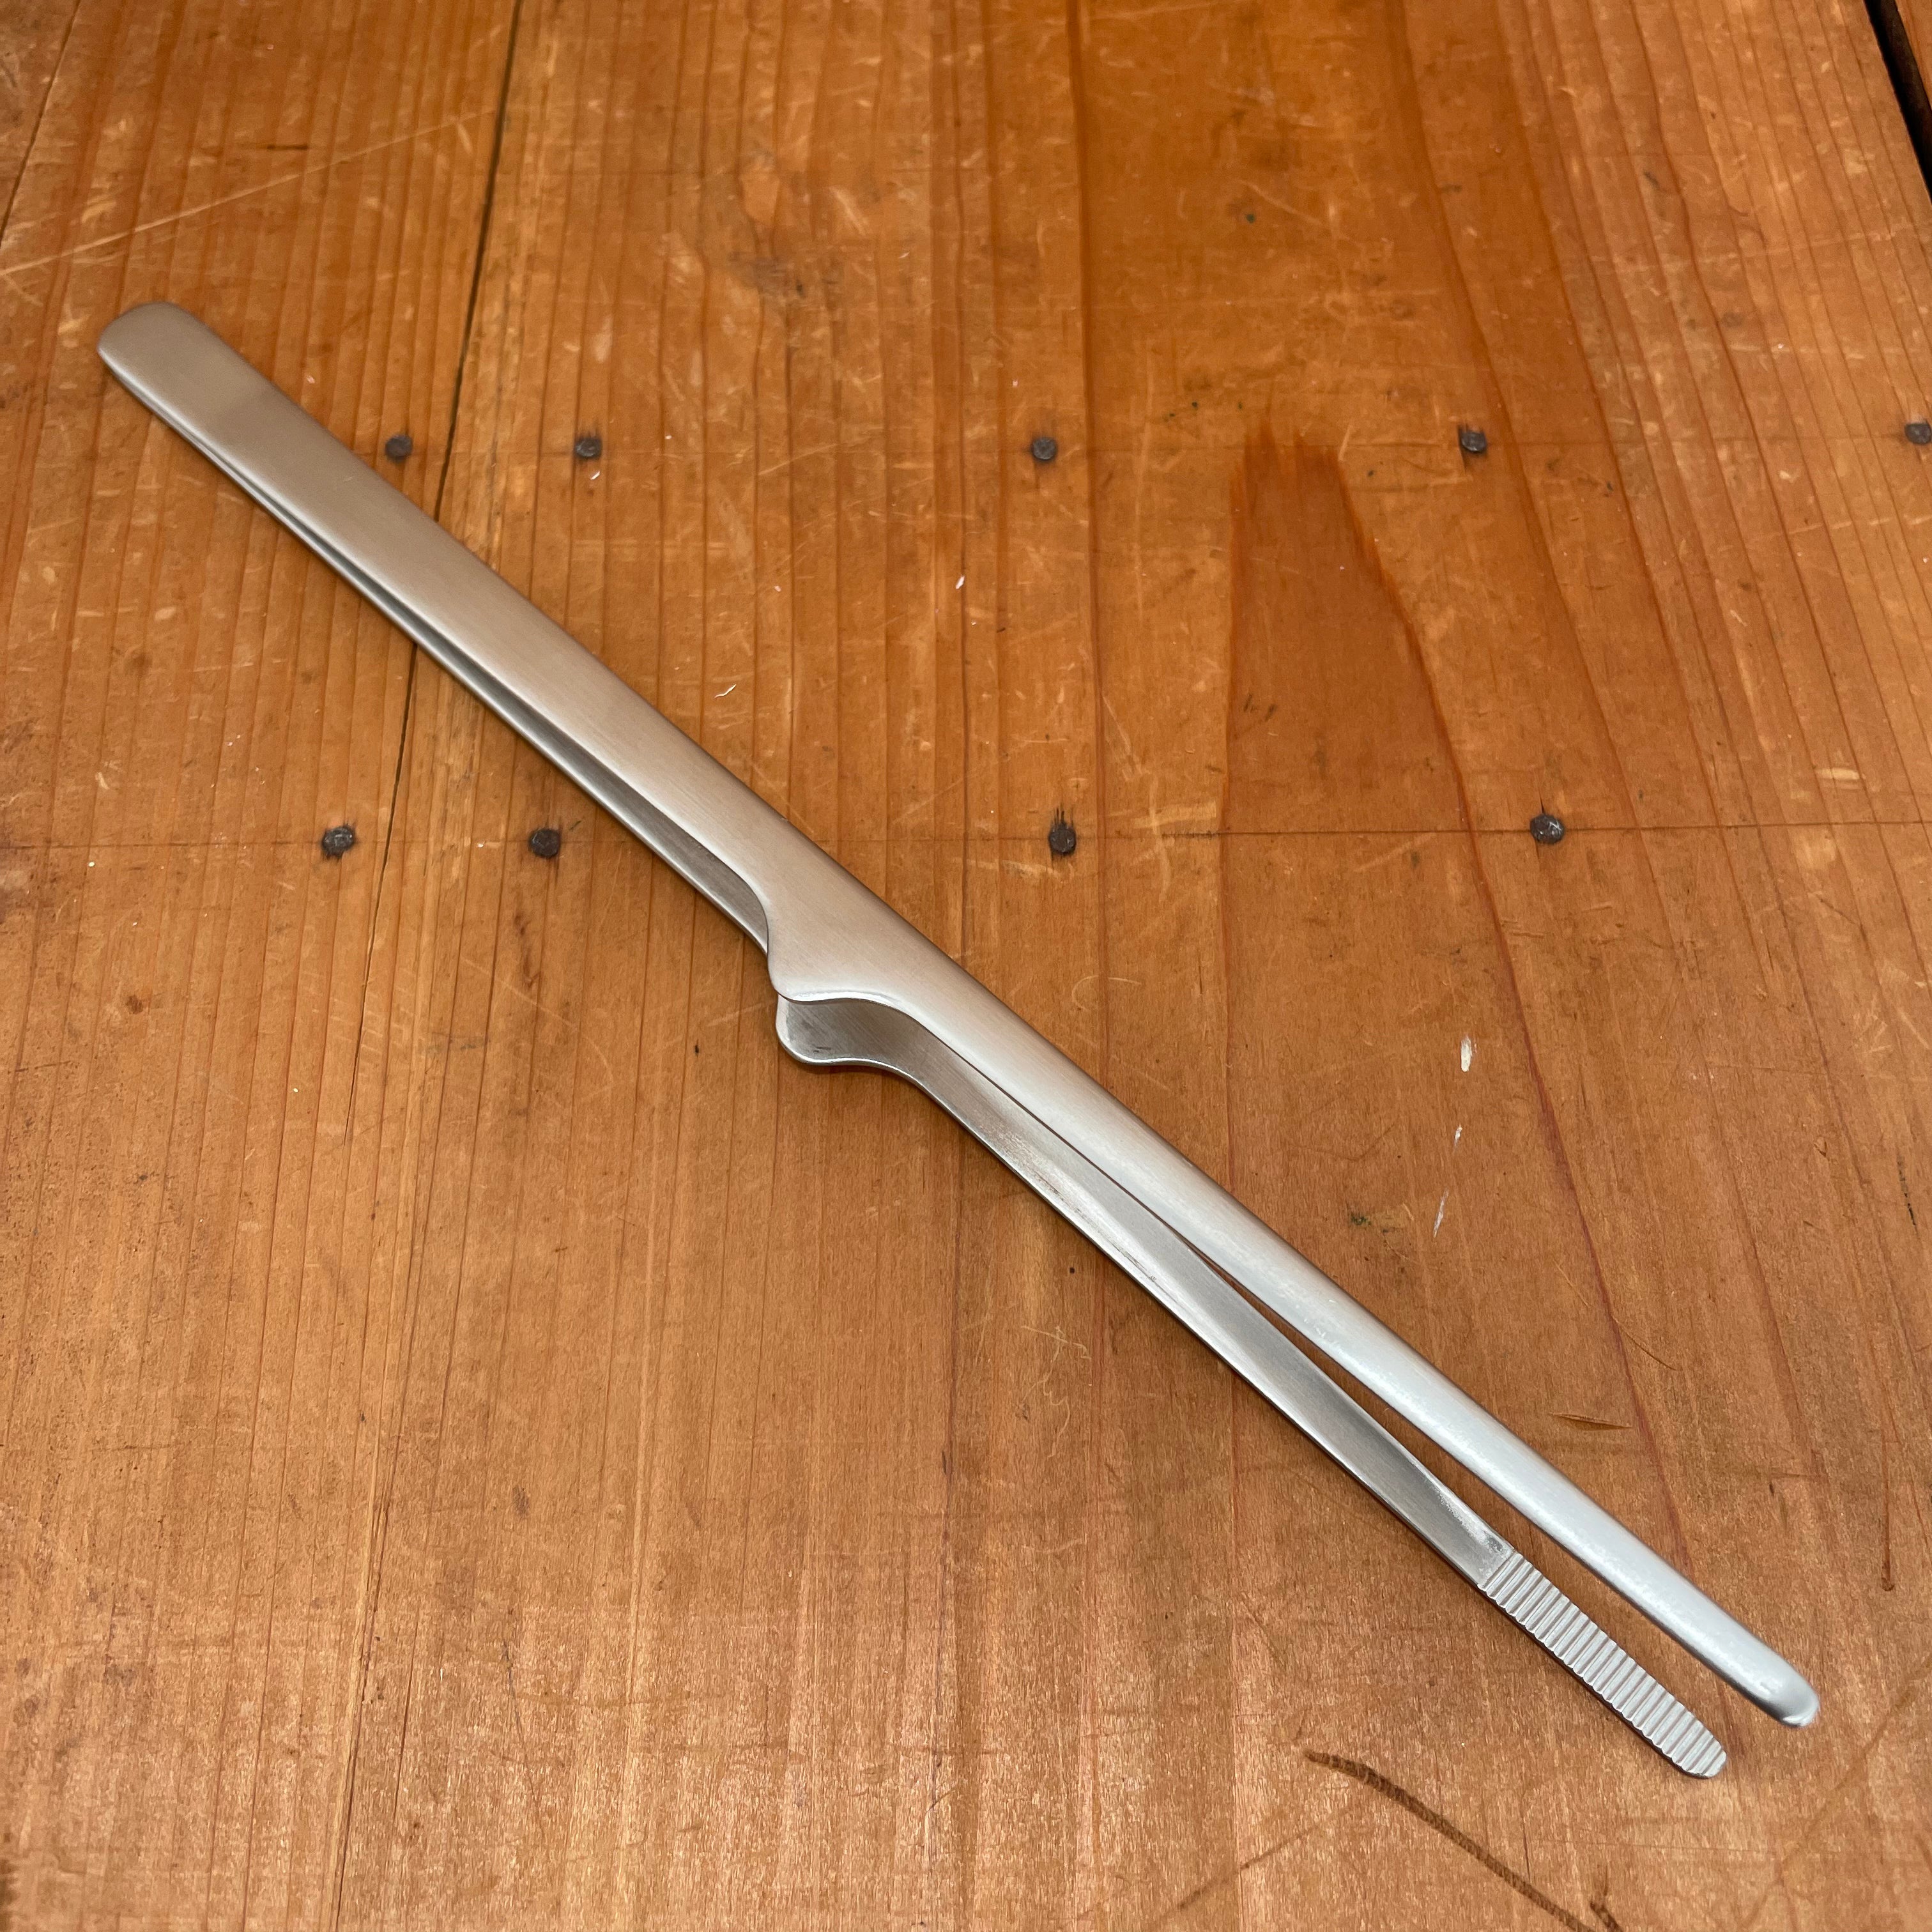 Single Blade Tweezers, High Carbon Steel Model Tweezers for Crafts